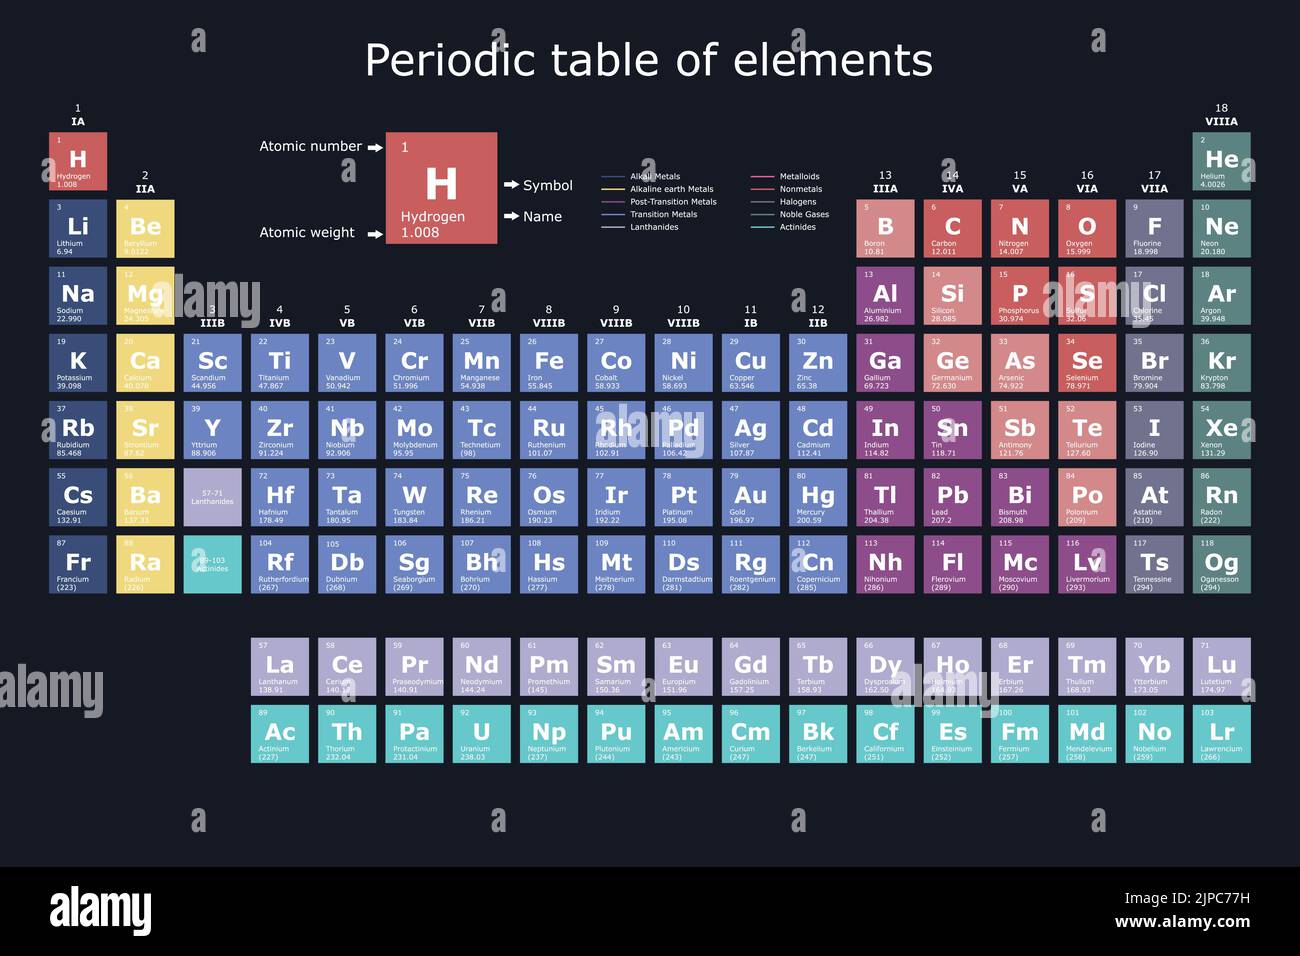 Tableau périodique classement des éléments chimiques avec leur numéro atomique, leur poids atomique, leur nom et leur symbole, avec ballon, bécher et test t Illustration de Vecteur